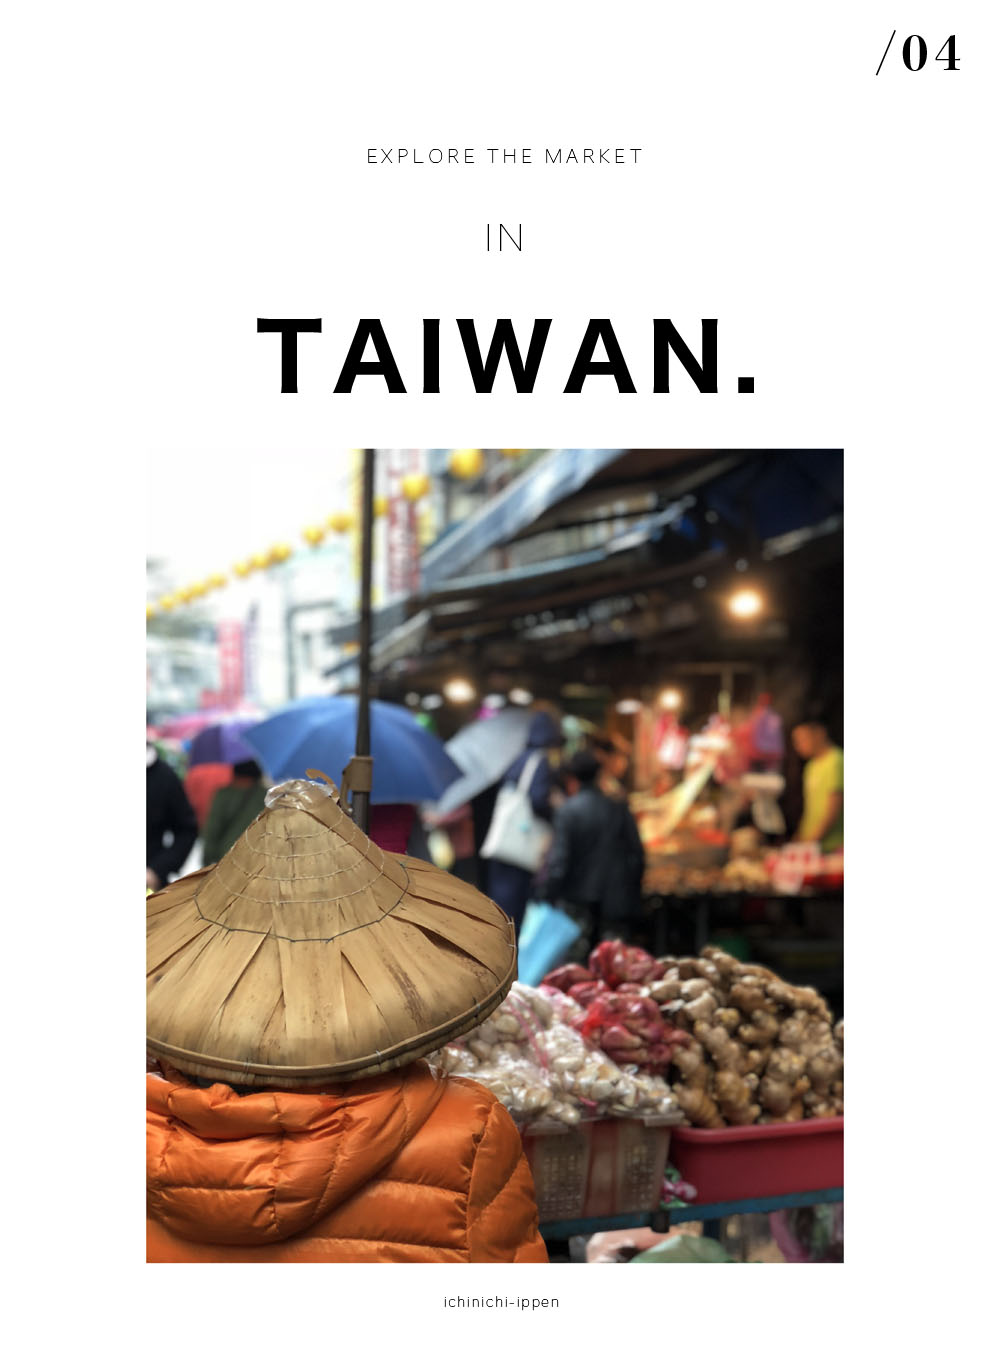 台湾の市場に行って来ました 〜「 台湾産の生にんにくを発見 」